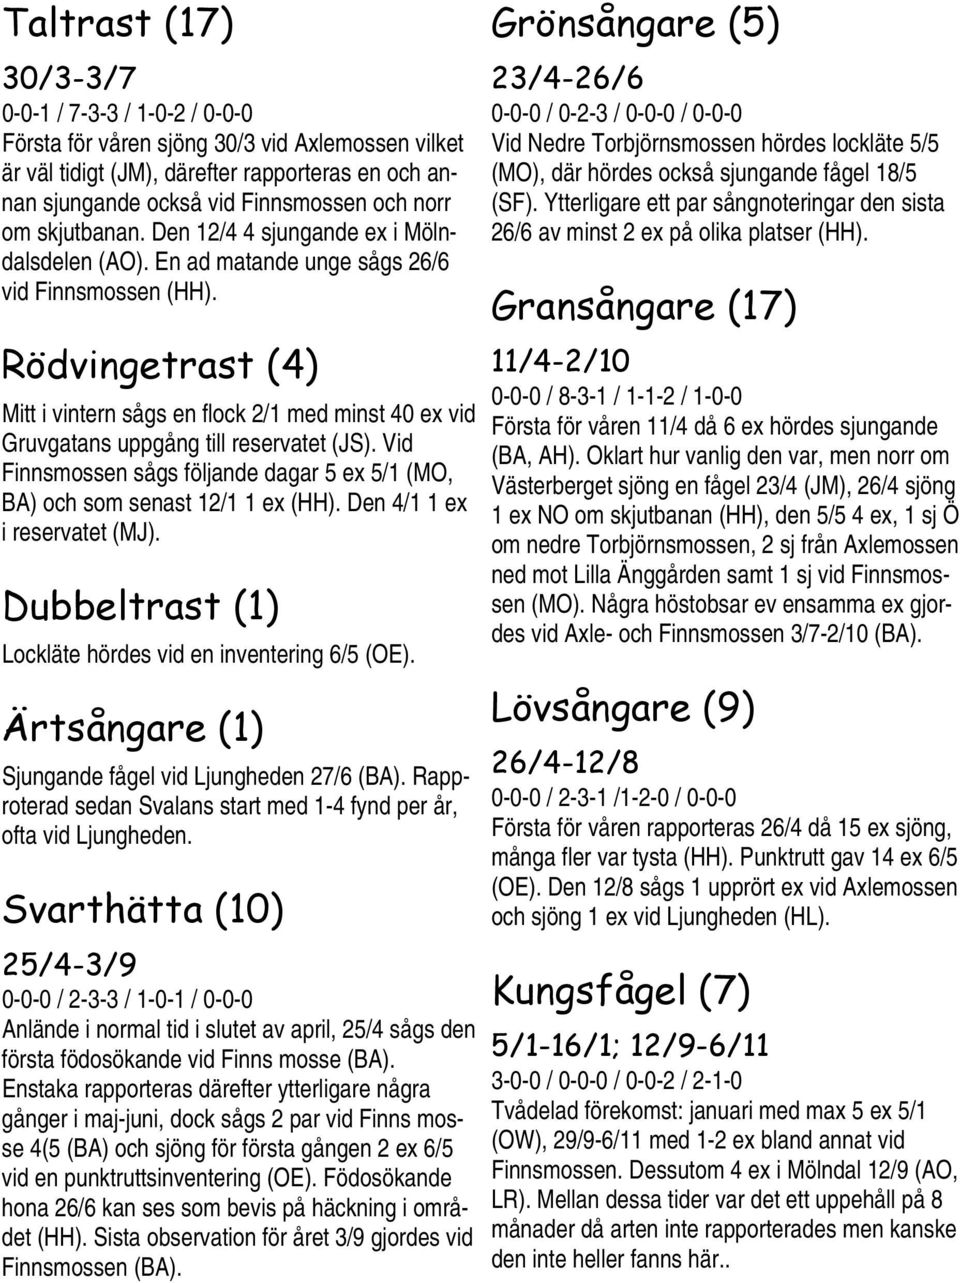 Rödvingetrast (4) Mitt i vintern sågs en flock 2/1 med minst 40 ex vid Gruvgatans uppgång till reservatet (JS). Vid Finnsmossen sågs följande dagar 5 ex 5/1 (MO, BA) och som senast 12/1 1 ex (HH).